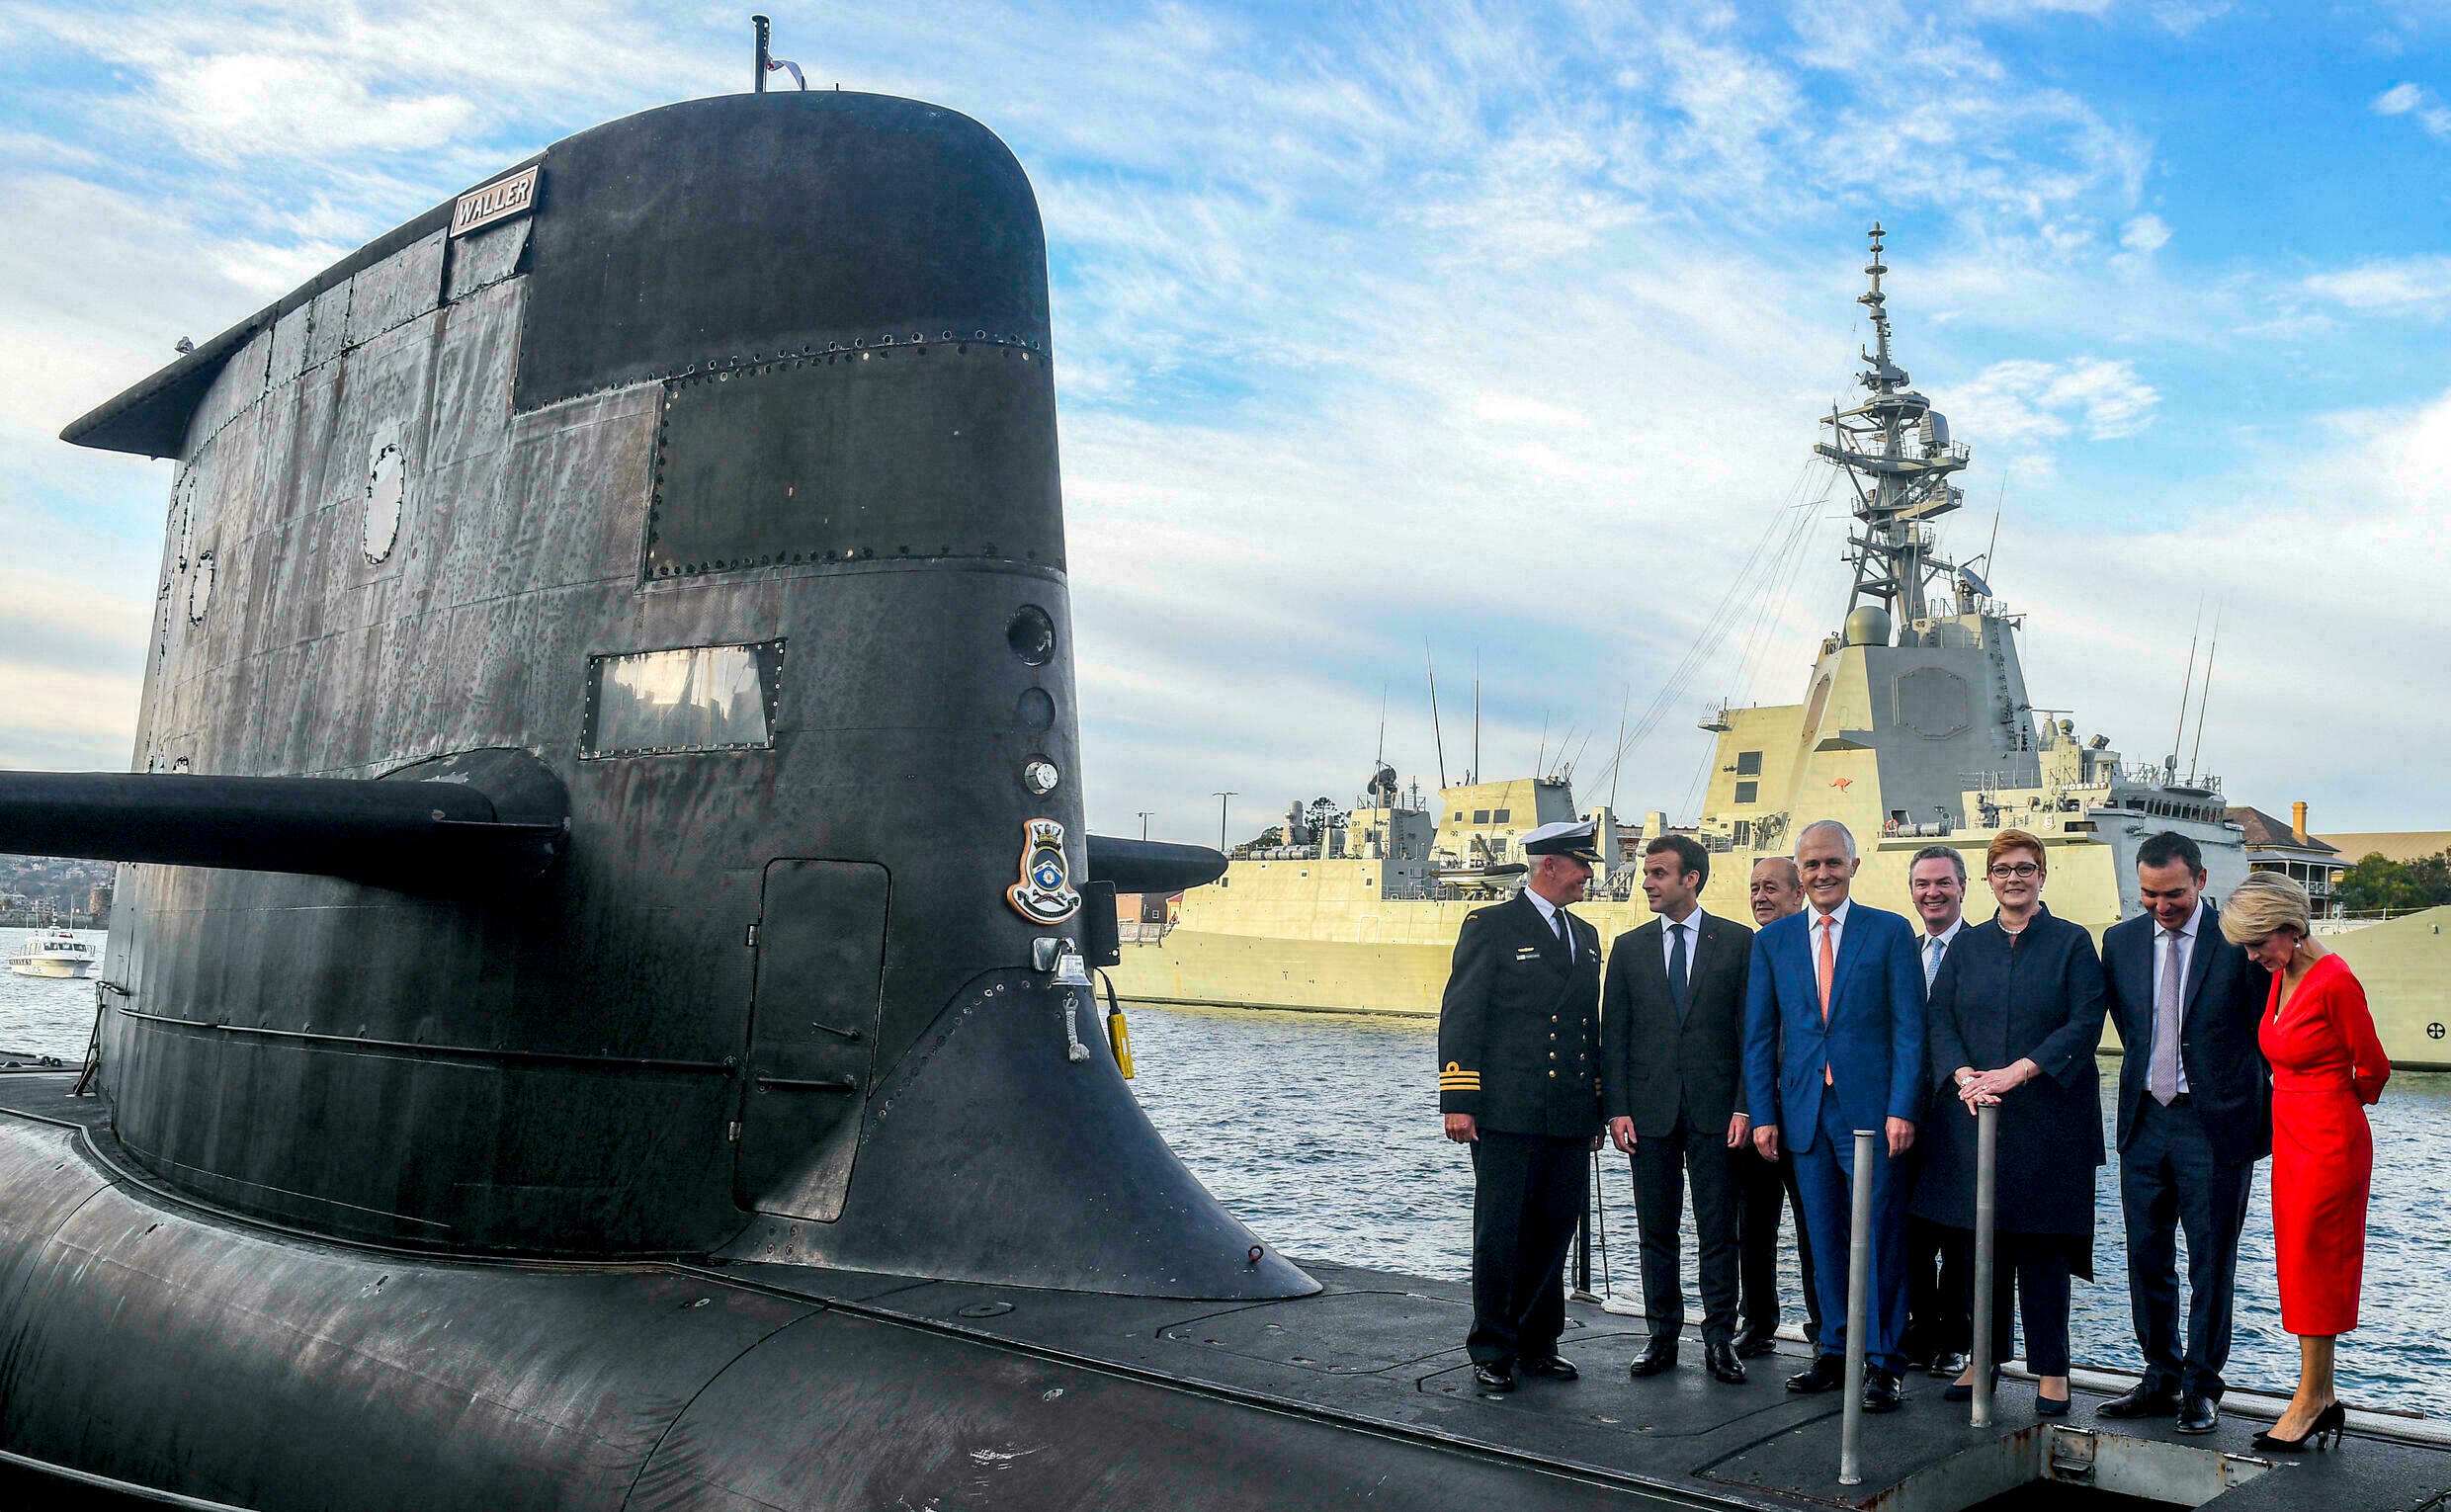 Le président français Emmanuel Macron et l'ancien Premier ministre australien Malcolm Turnbull sur le pont du HMAS Waller, un sous-marin de classe Collins opéré par la Royal Australian Navy, à Sydney en mai 2018. (Source : F24)